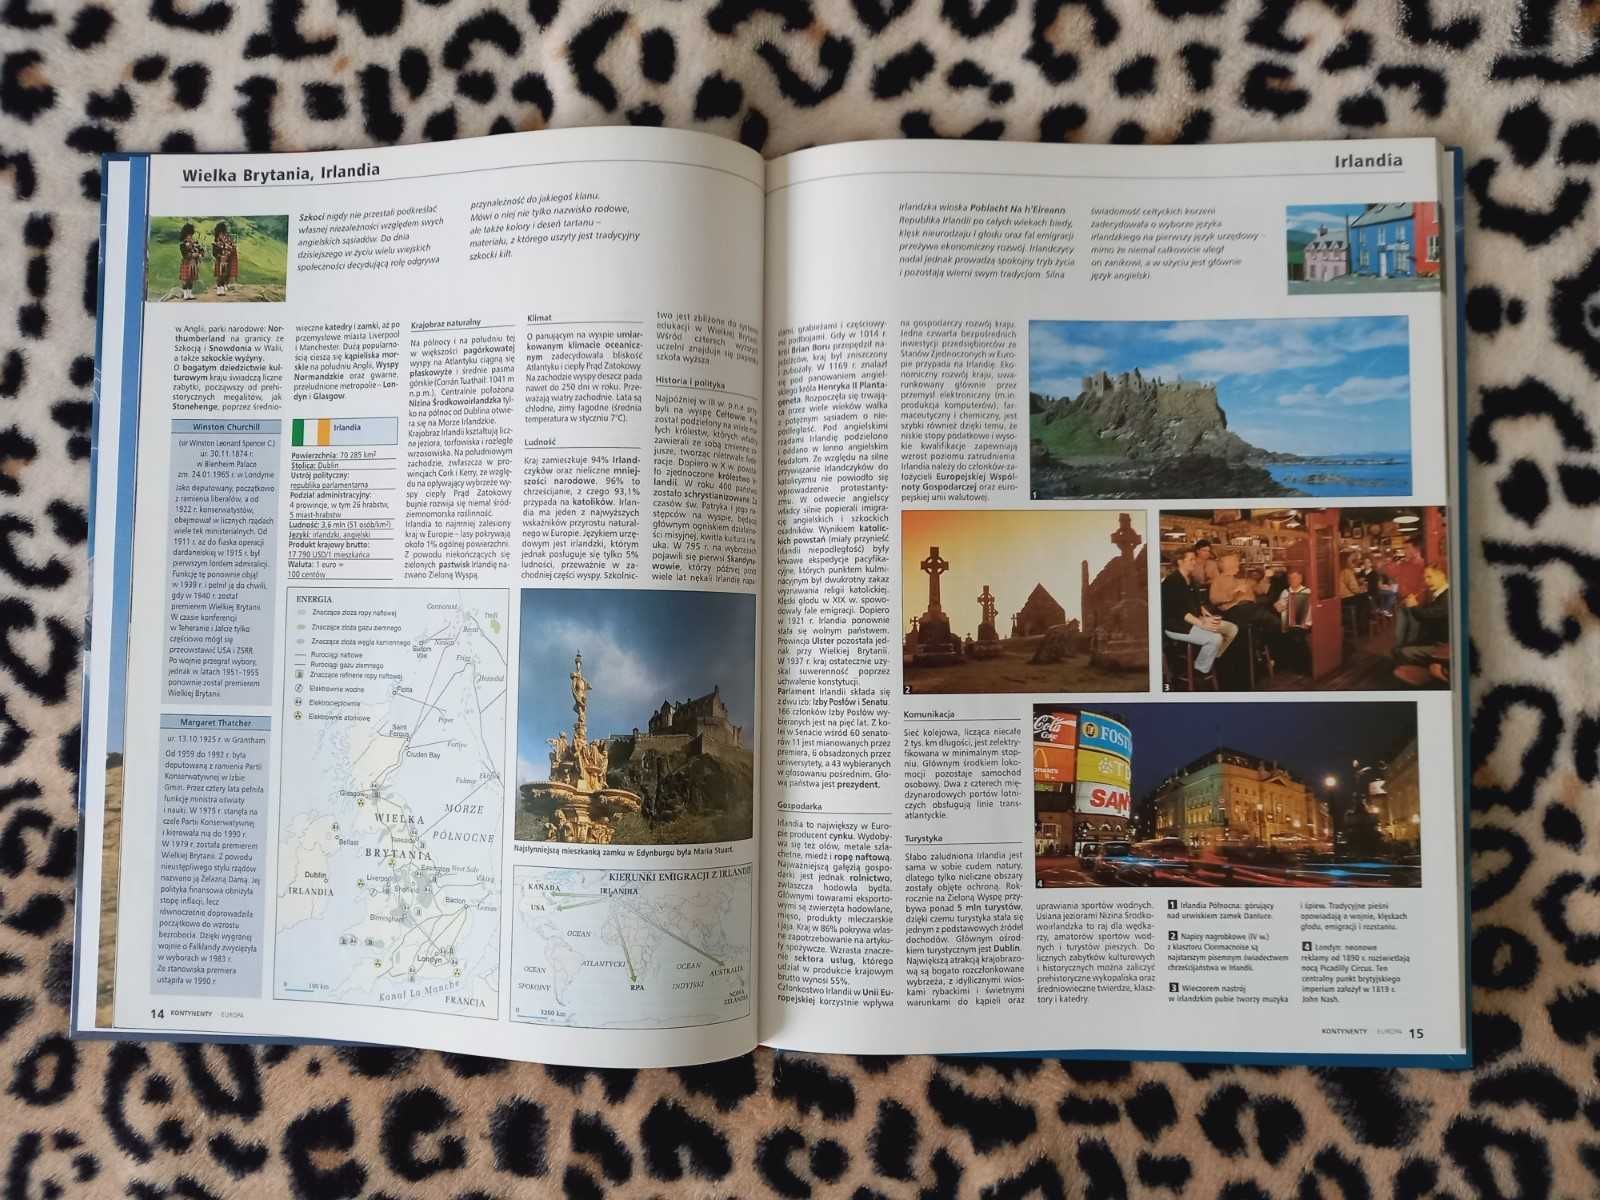 Wielka Encyklopedia Geografii (seria Oxford 16 sztuk)+gratis do wyboru